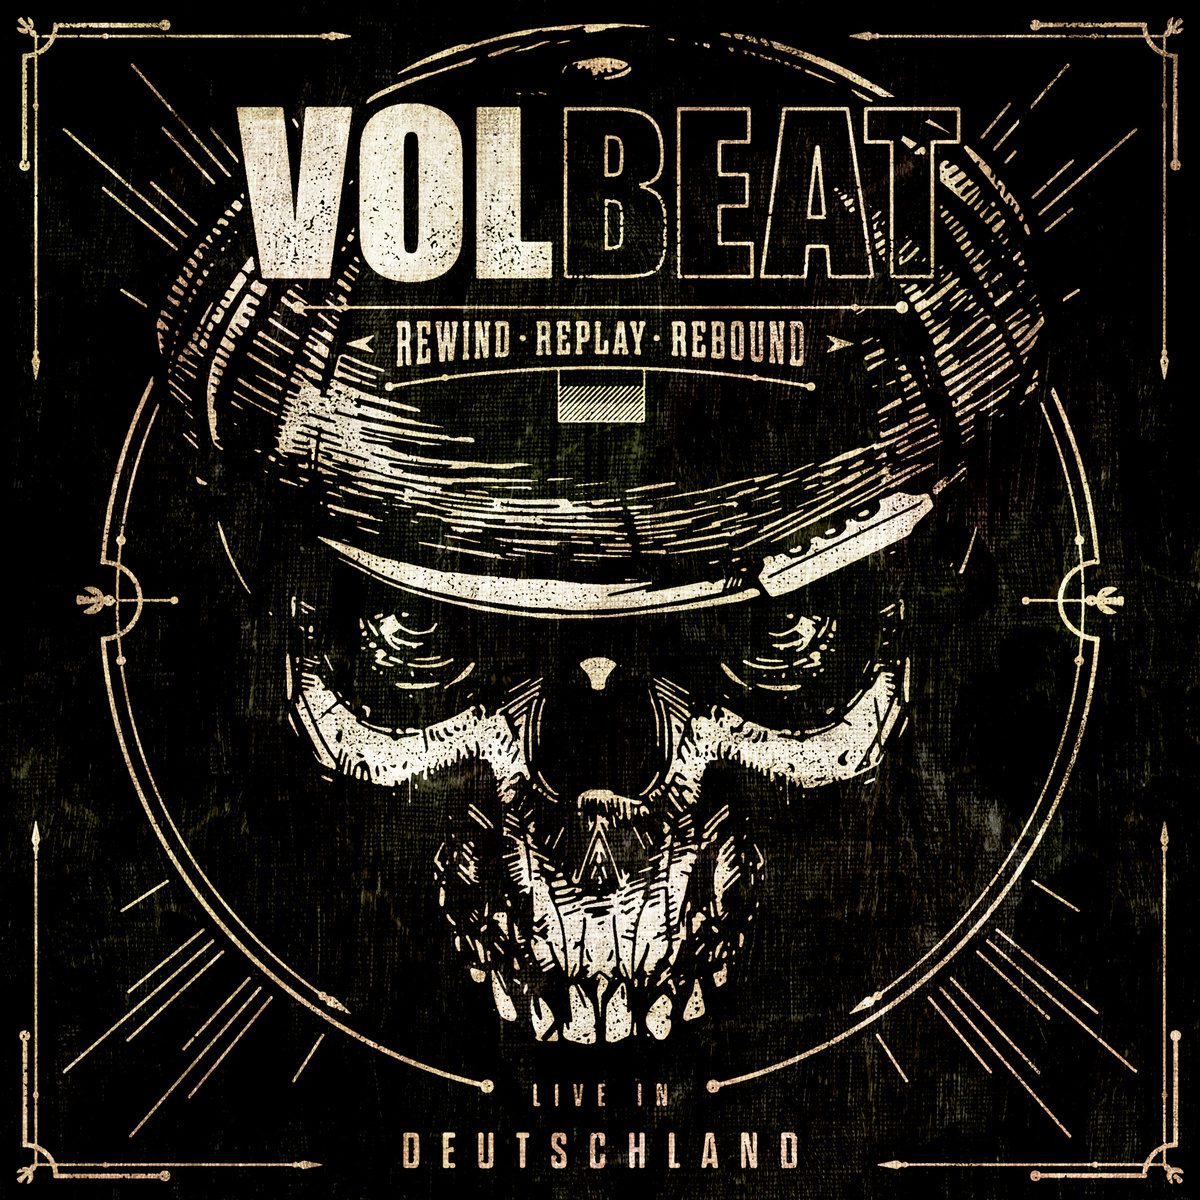 volbeat album 2017